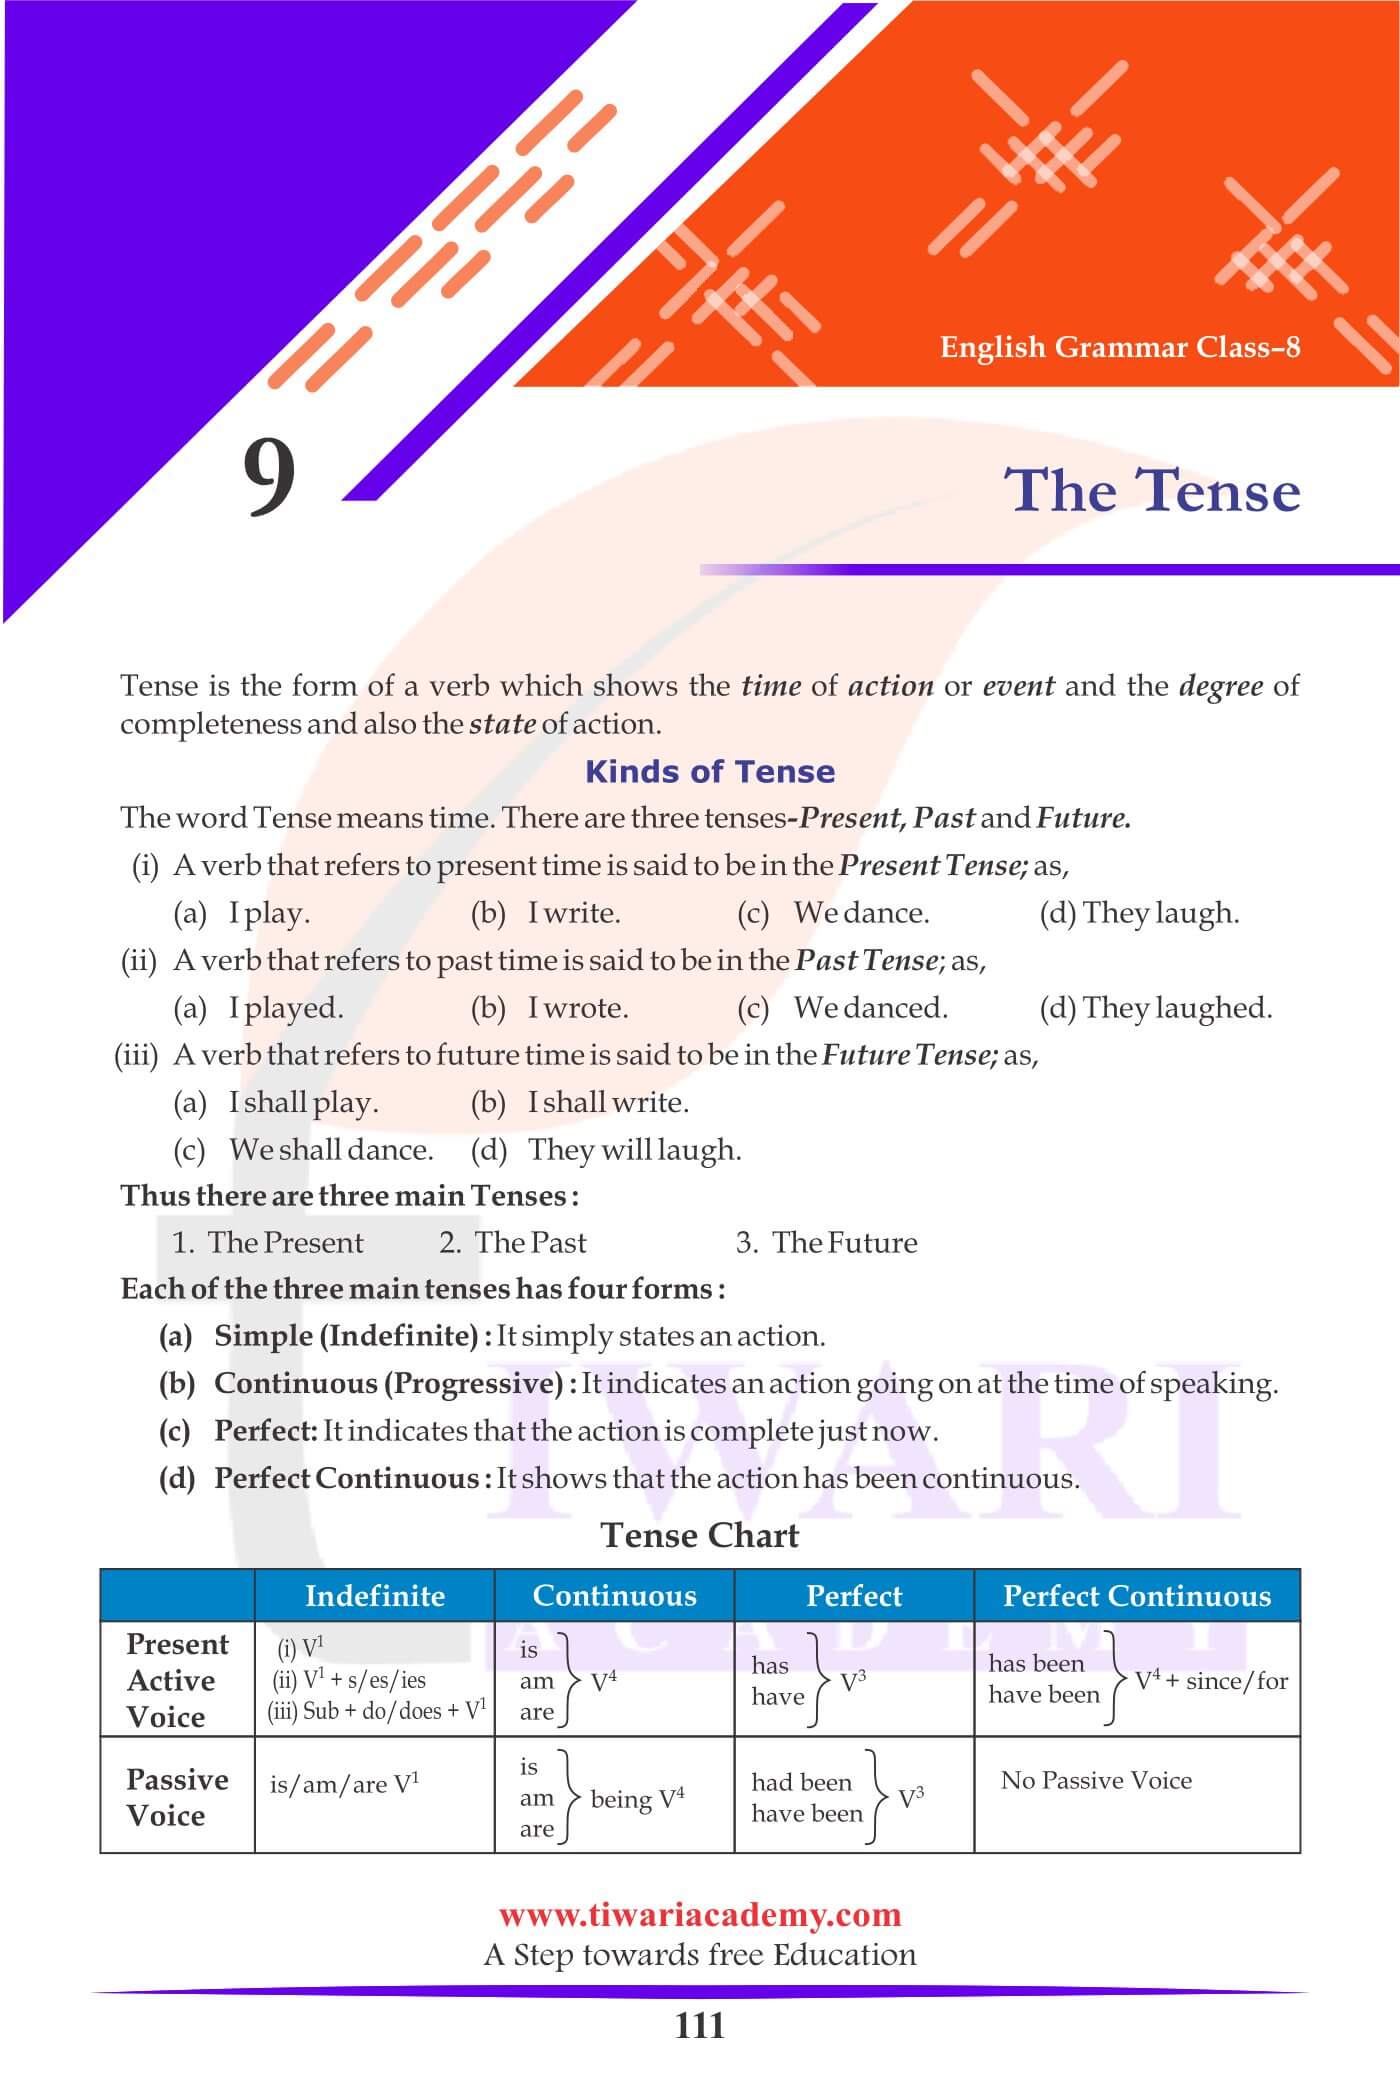 Class 8 English Grammar Chapter 9 The Tense